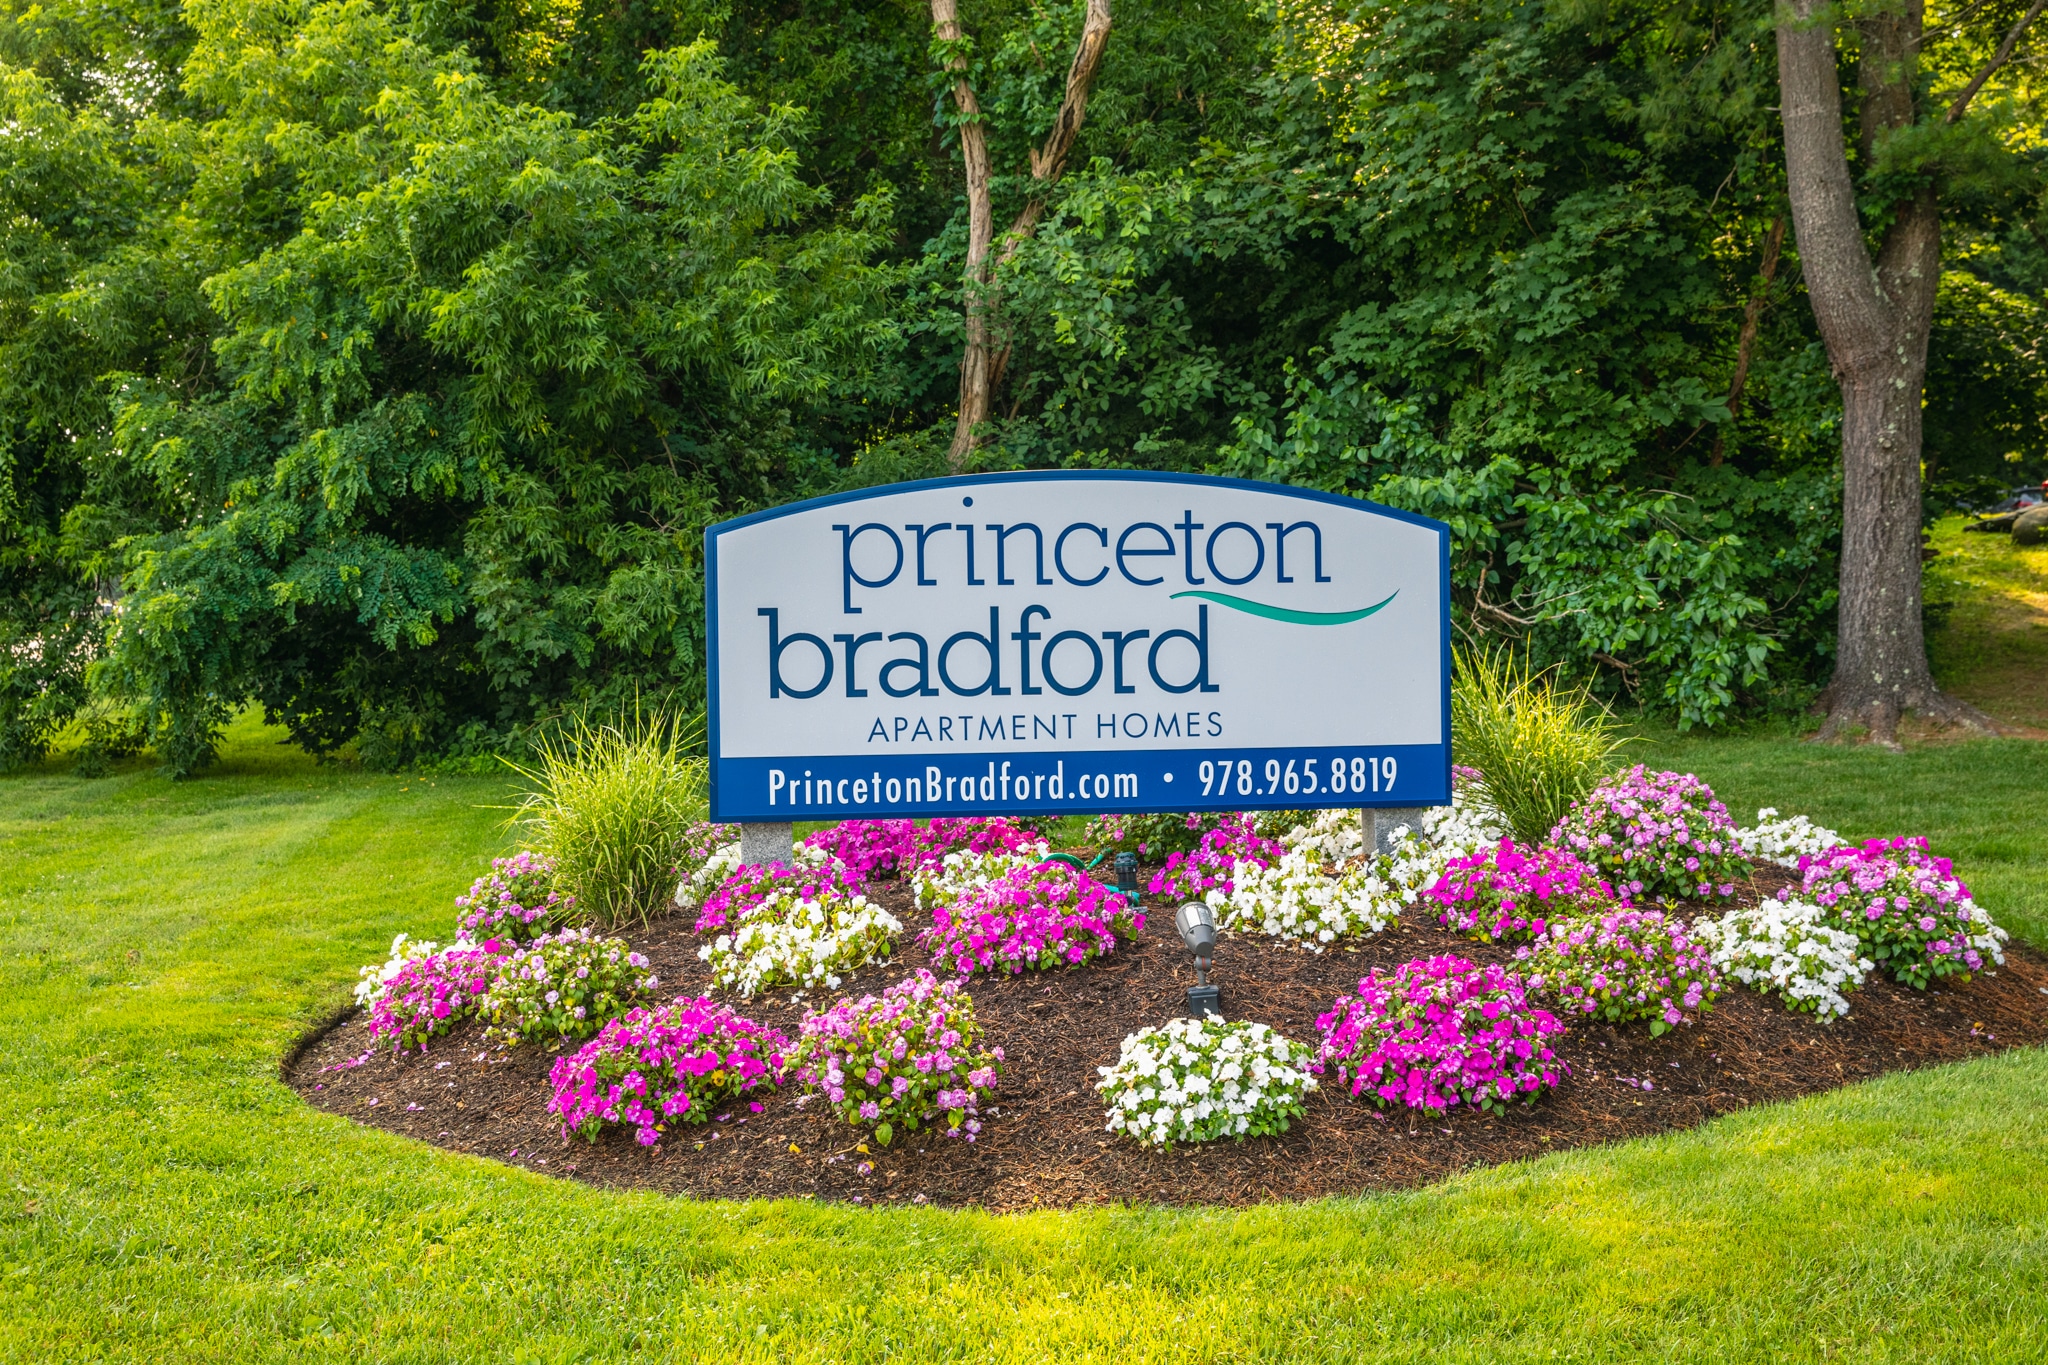 PrincetonBradford-102